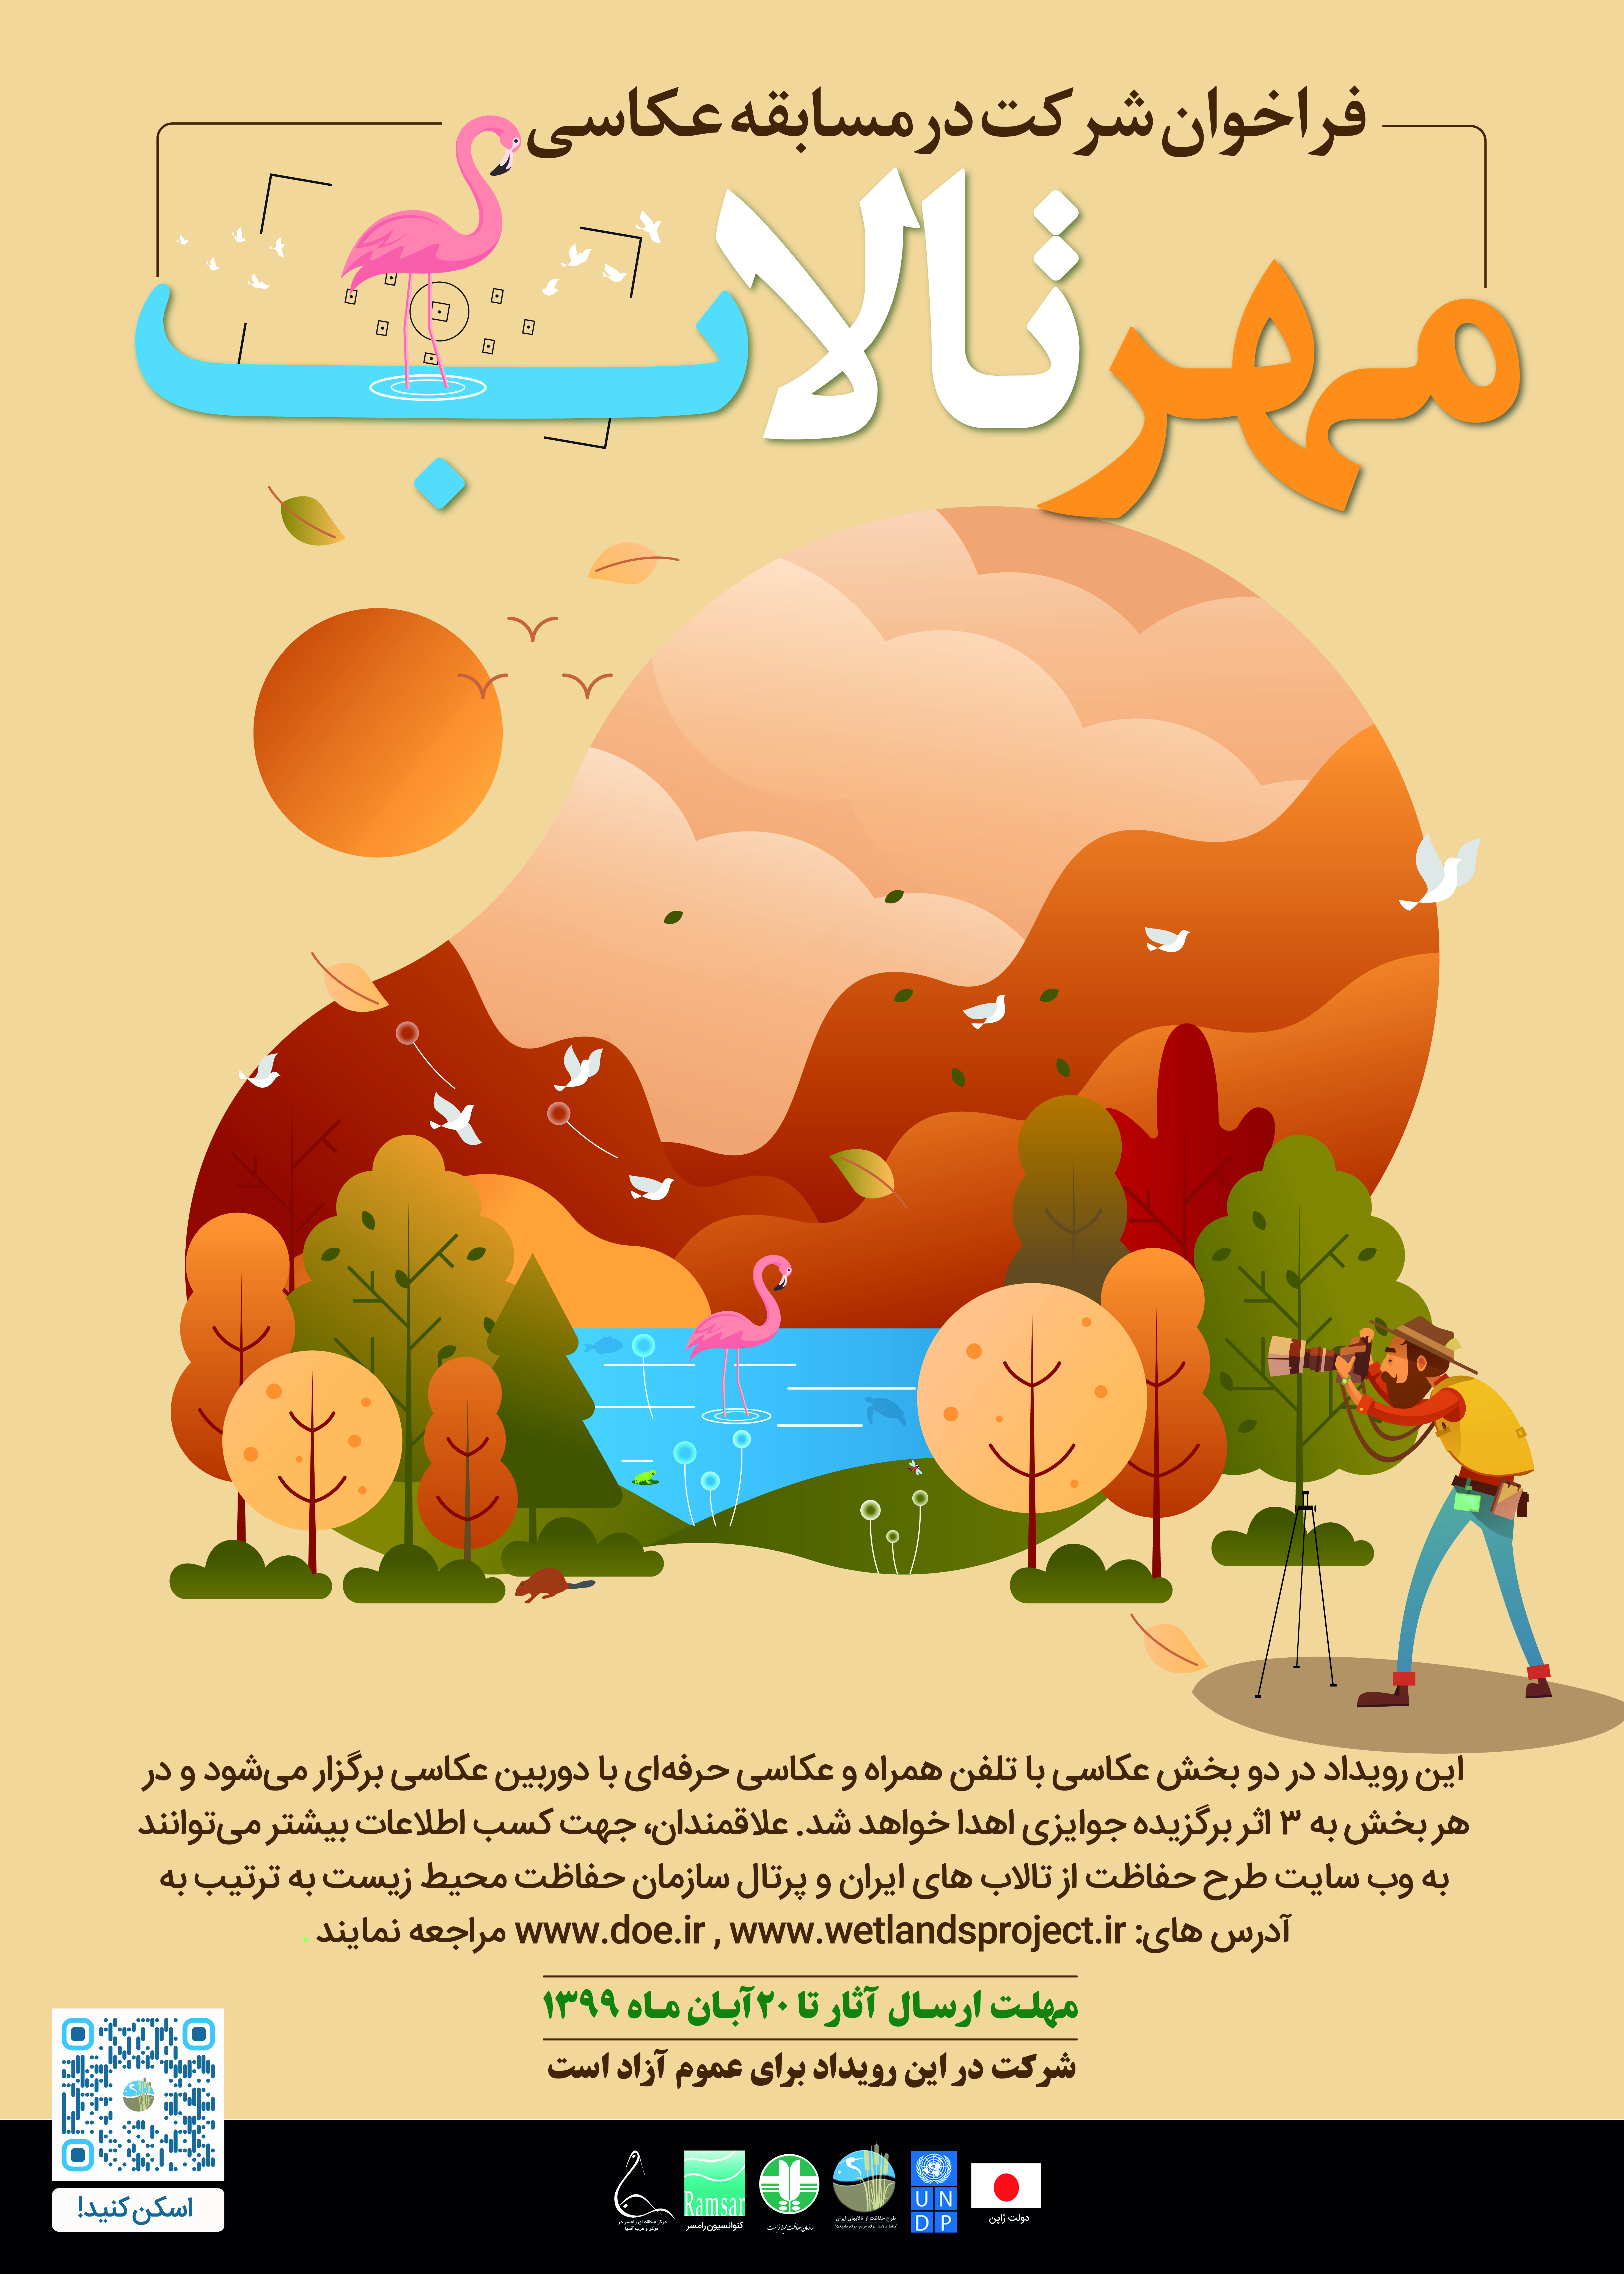 فراخوان سومین دوره مسابقه عکاسی ویژه تالابهای ایران با عنوان «مهر تالاب»  